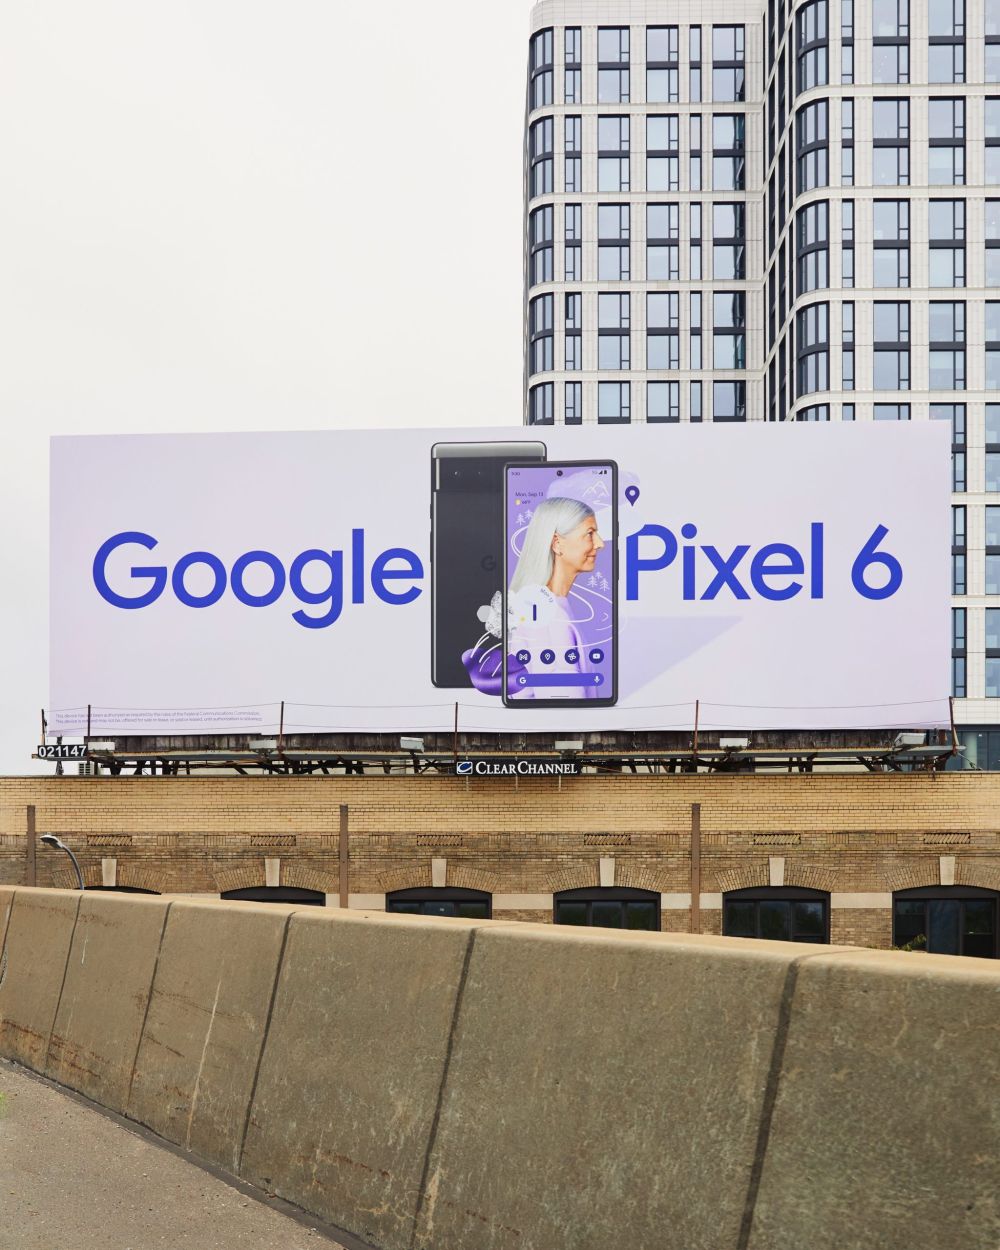 pixel 6 billboard 4